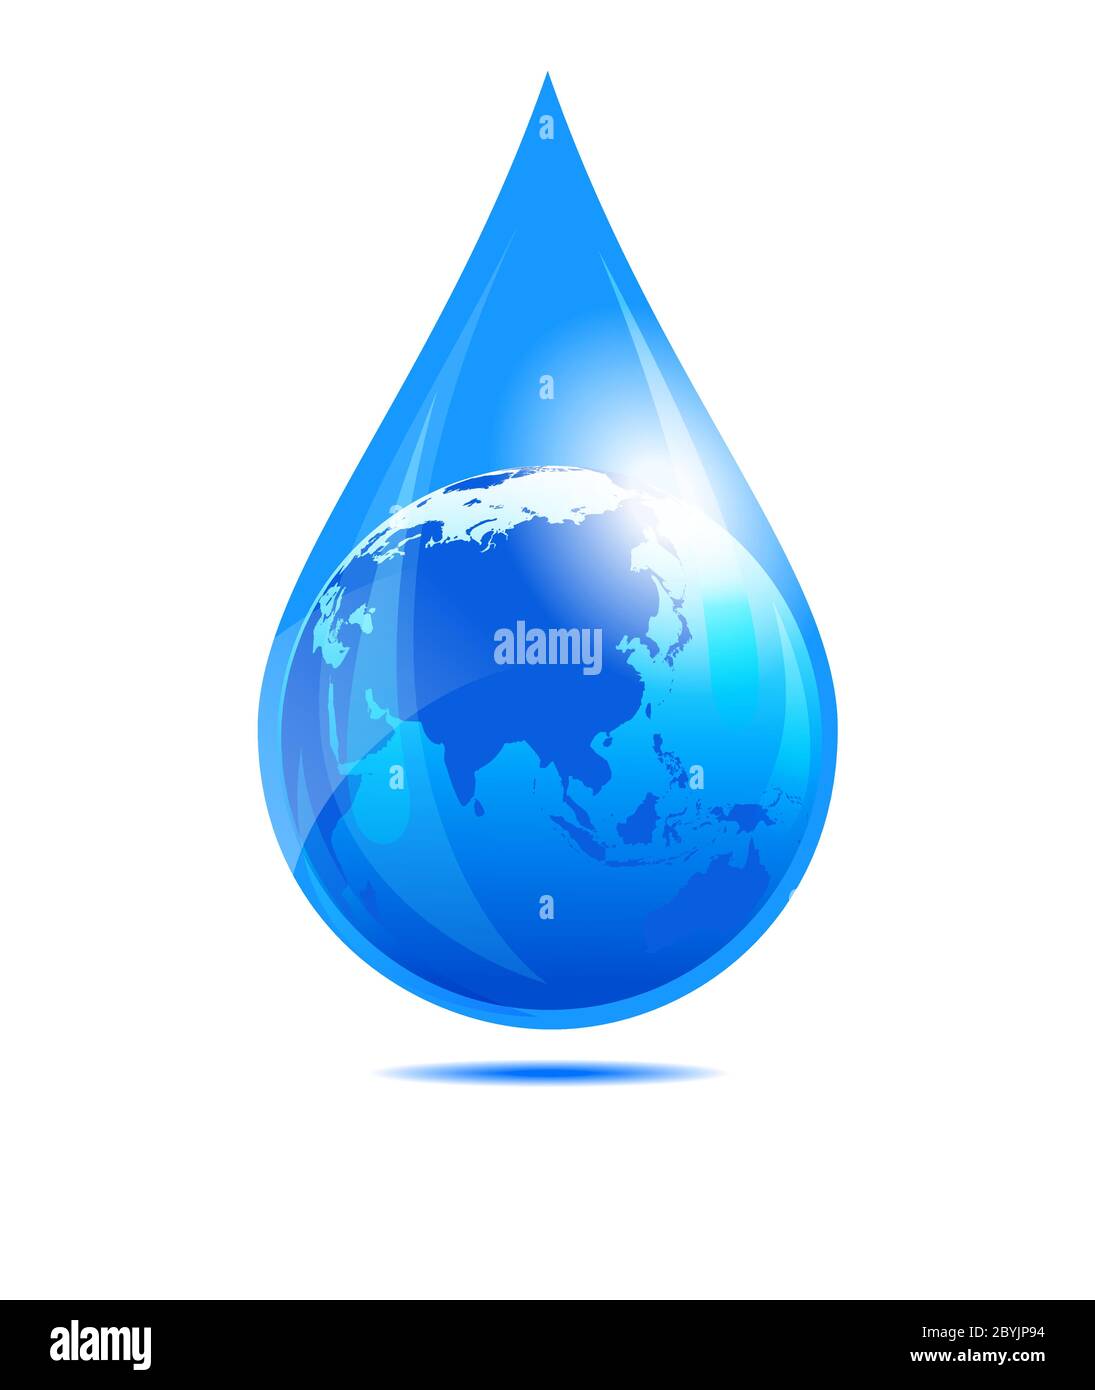 Goutte d'eau World, Chine, Inde, extrême-Orient, Philippines, Malaisie, Globe in a Water droplet concept. Illustration de Vecteur